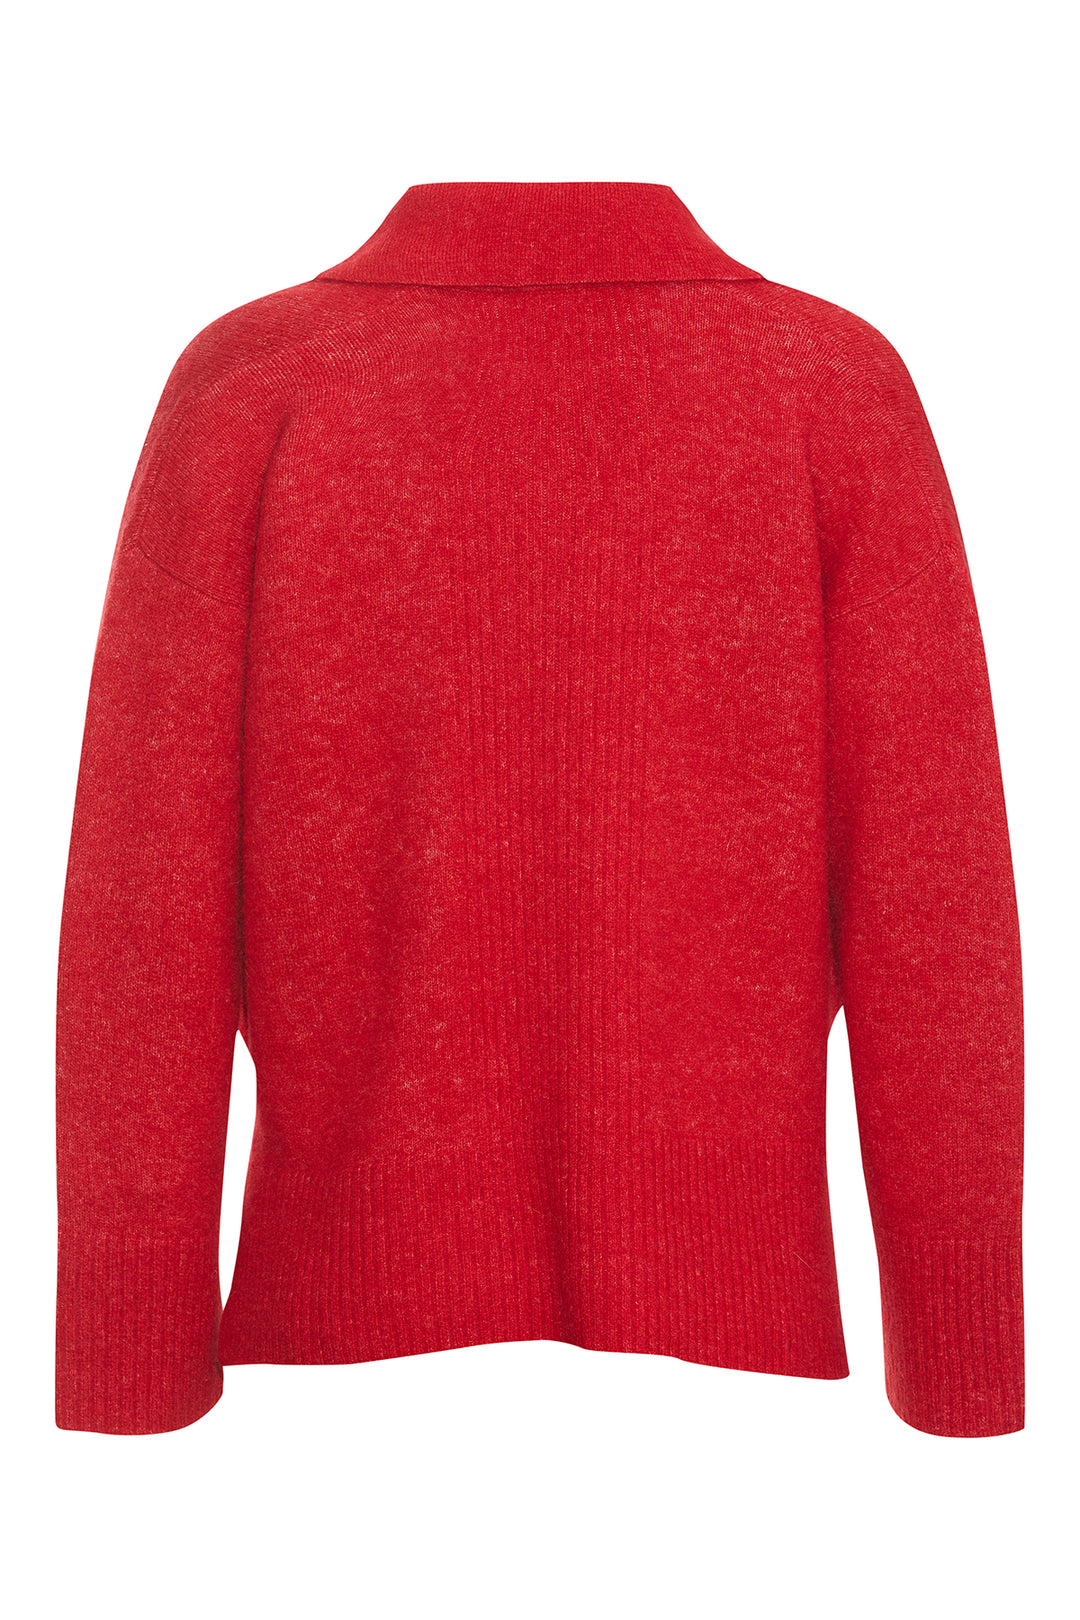 PBO Abile knit sweater KNITWEAR, HEAVY 310 Mars red